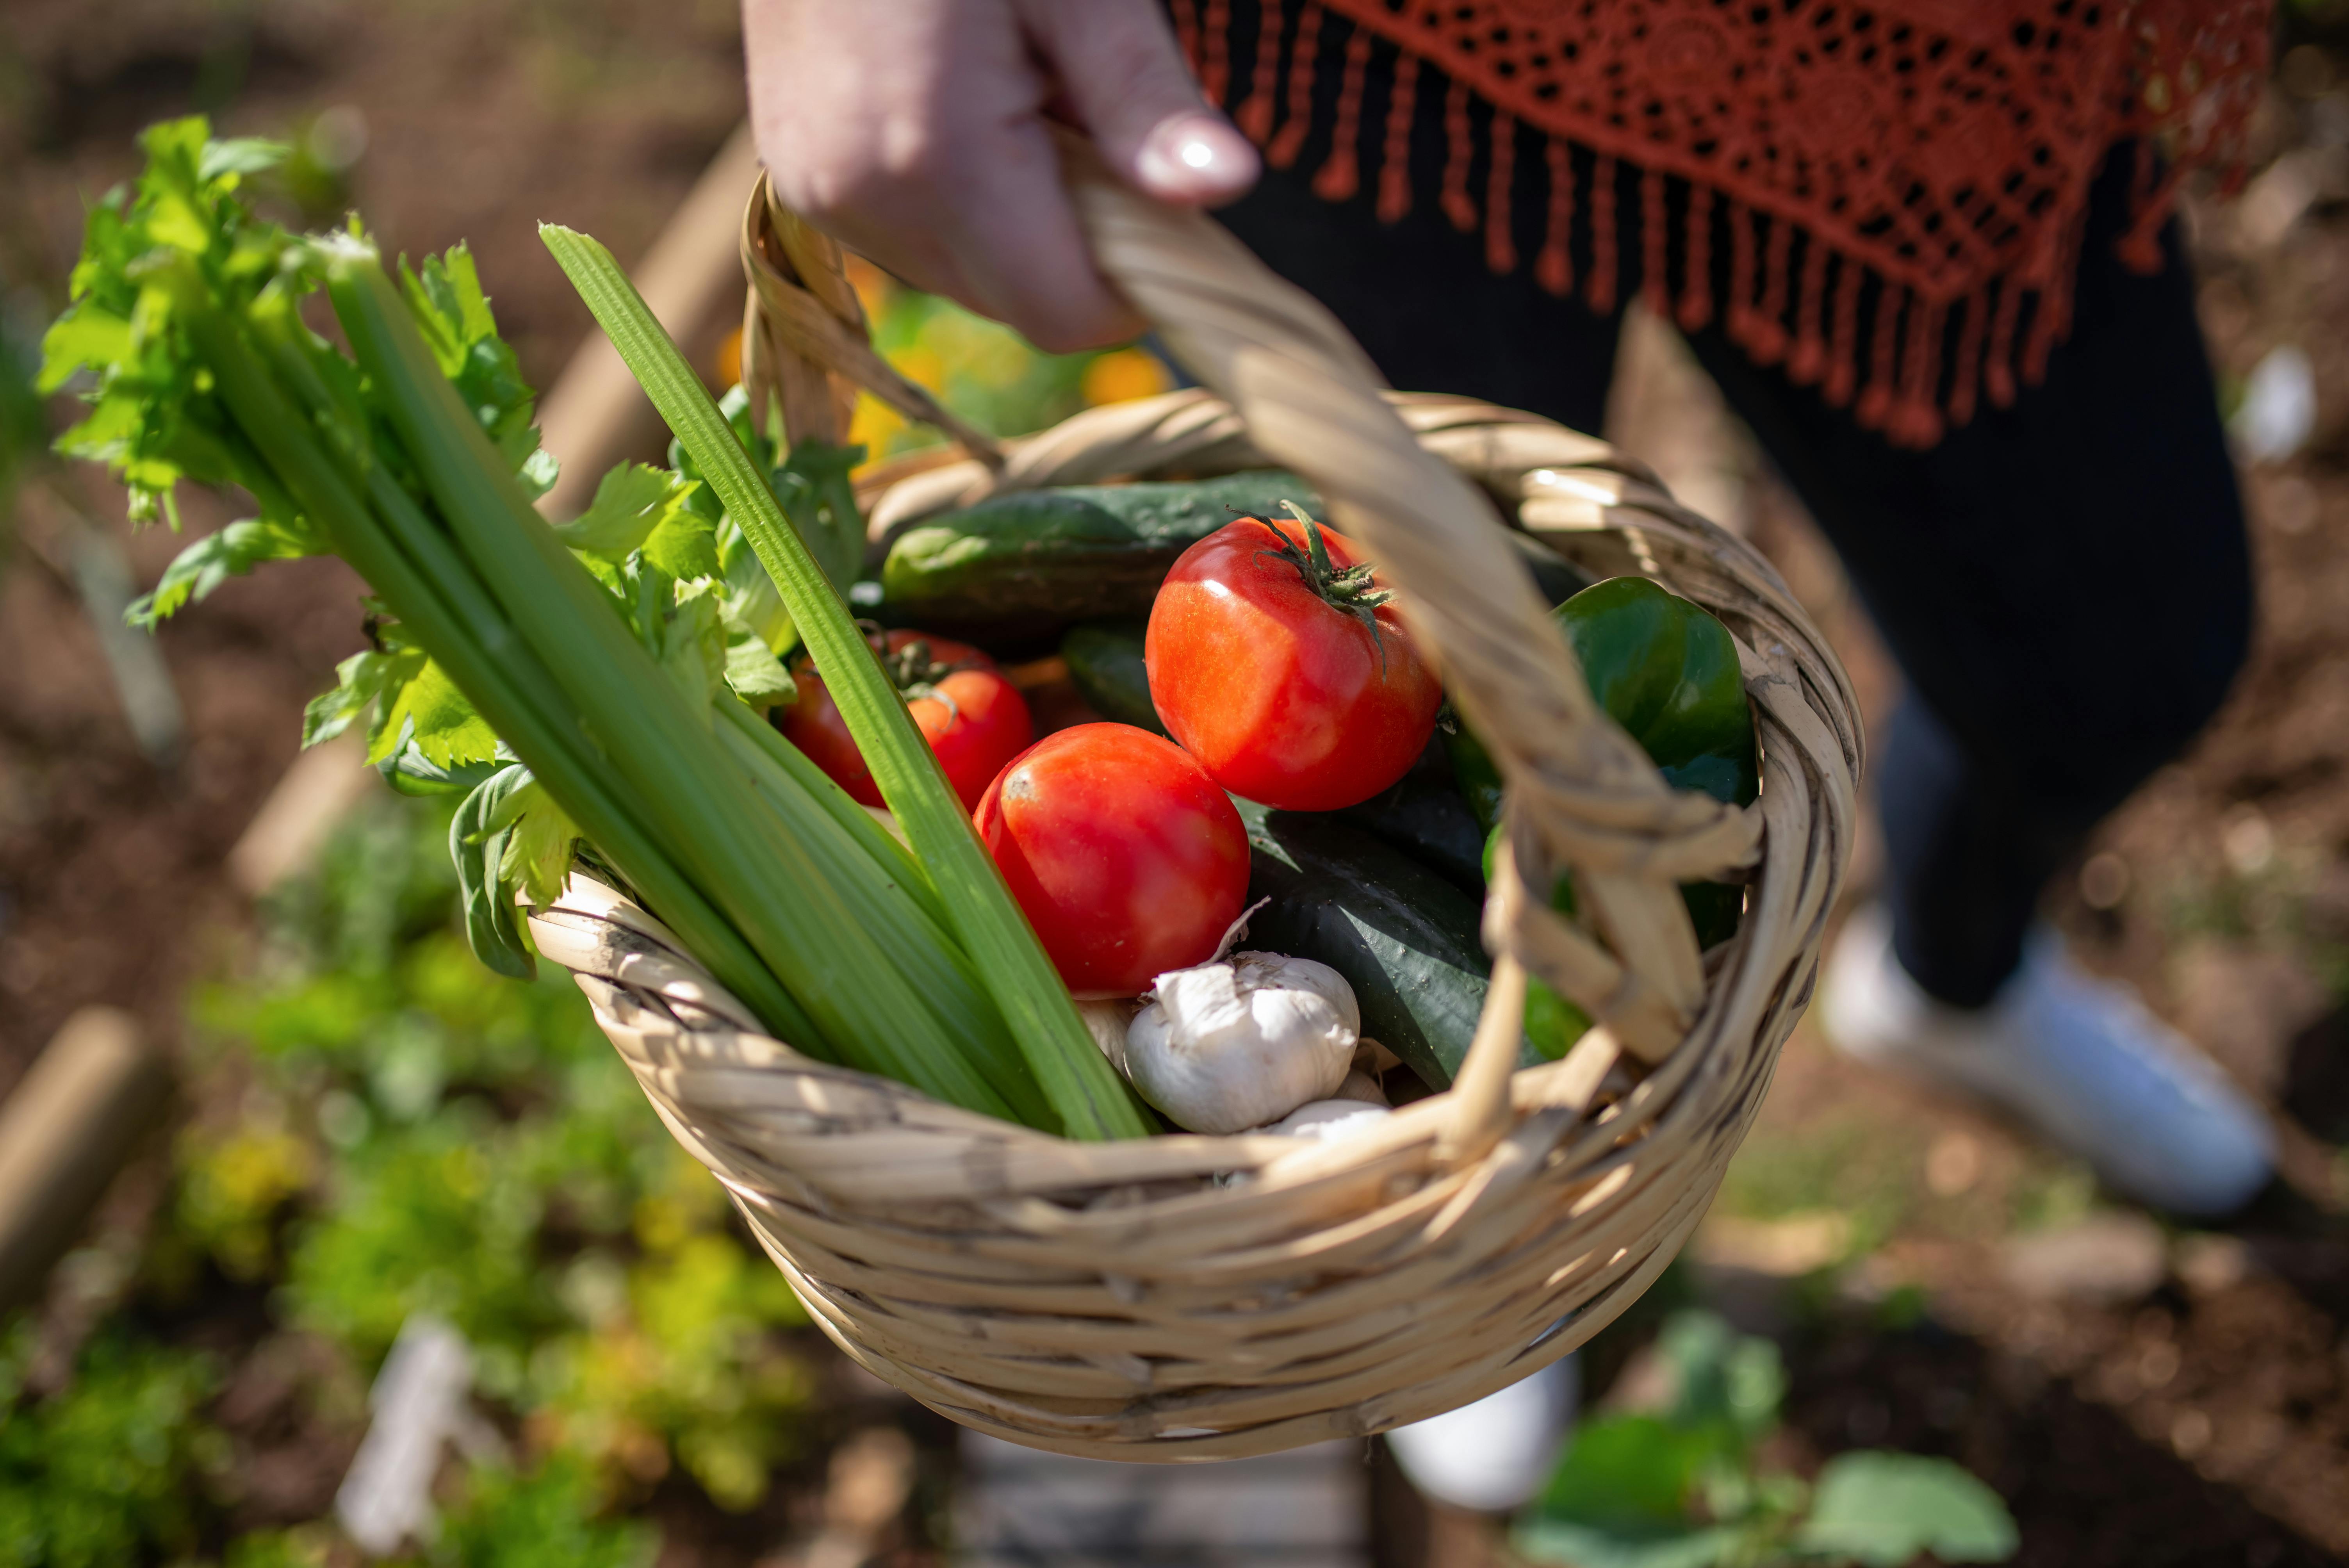 Ein Korb mit frischem Gemüse in einem Garten, der heimische Gartenarbeit und nachhaltiges Leben symbolisiert.